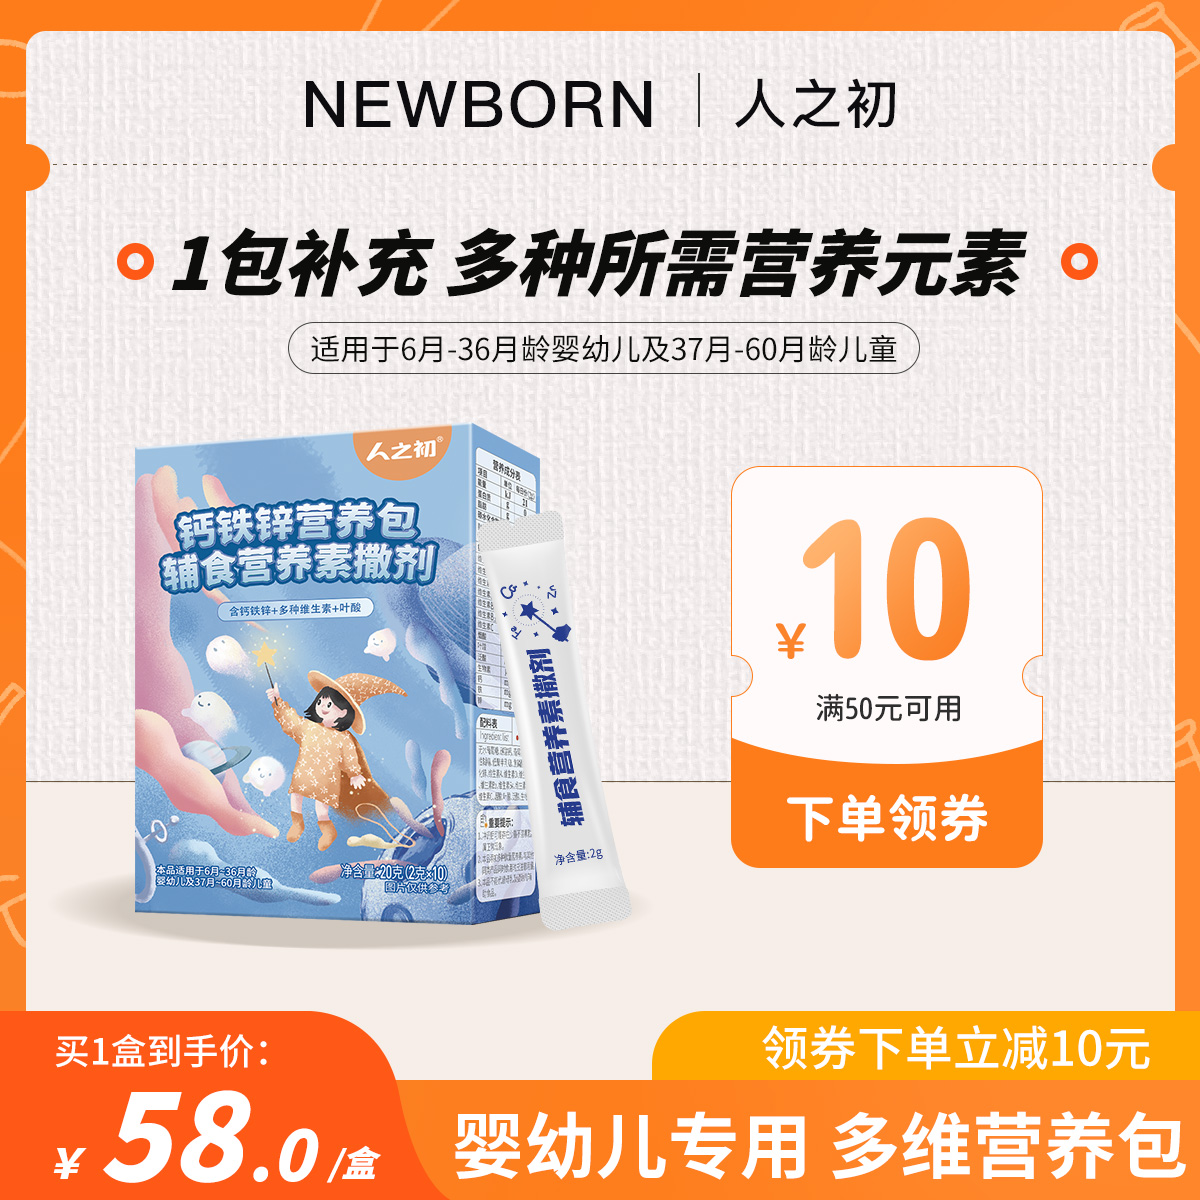 【顺手买一件】人之初营钙铁锌营养包宝宝儿童补铁钙锌 20g/盒